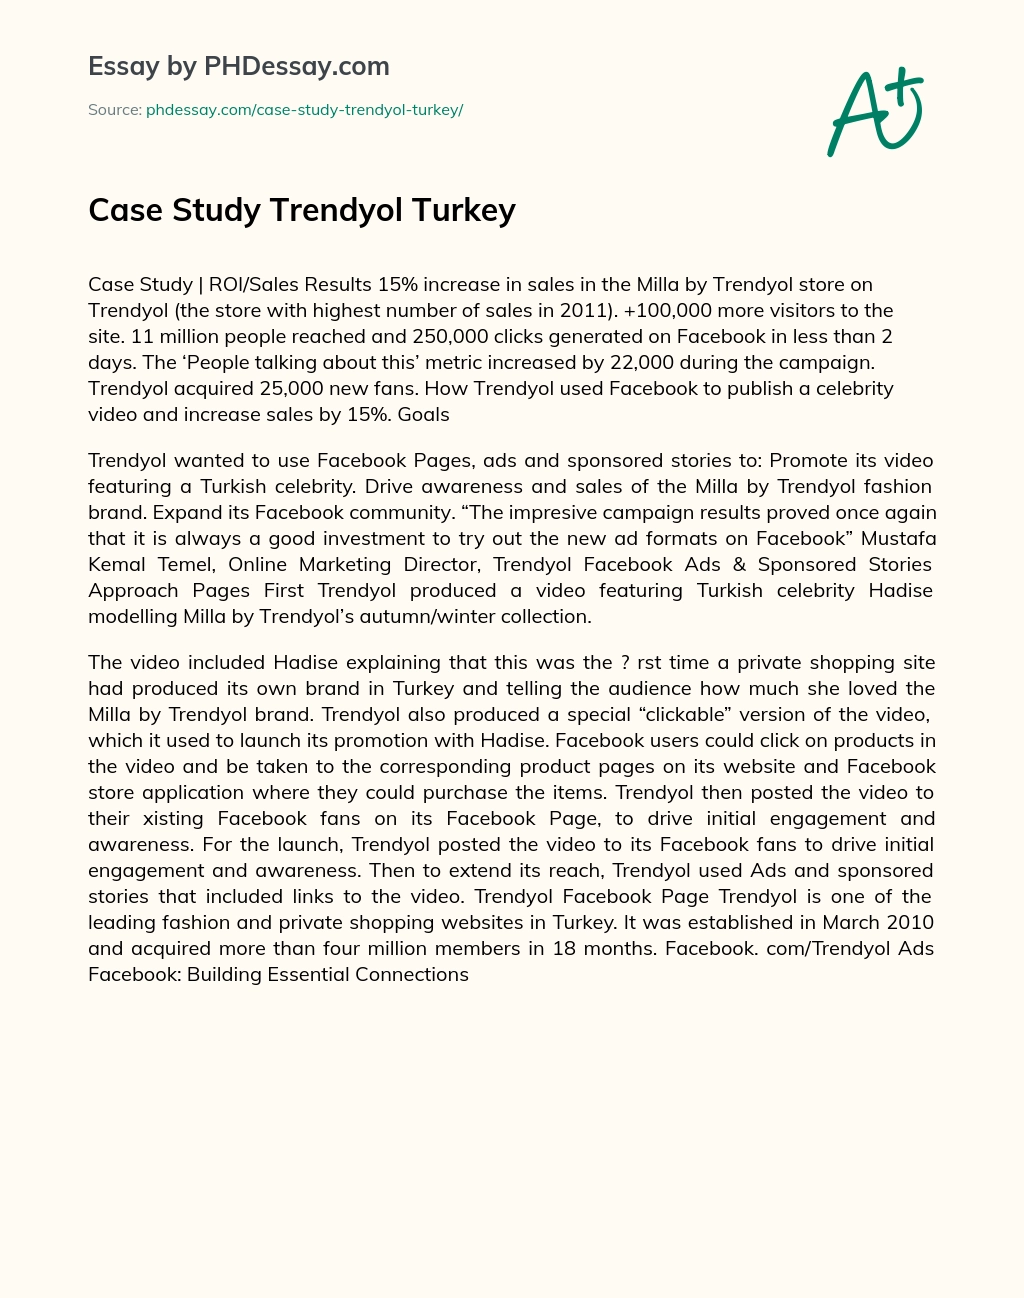 Case Study Trendyol Turkey essay